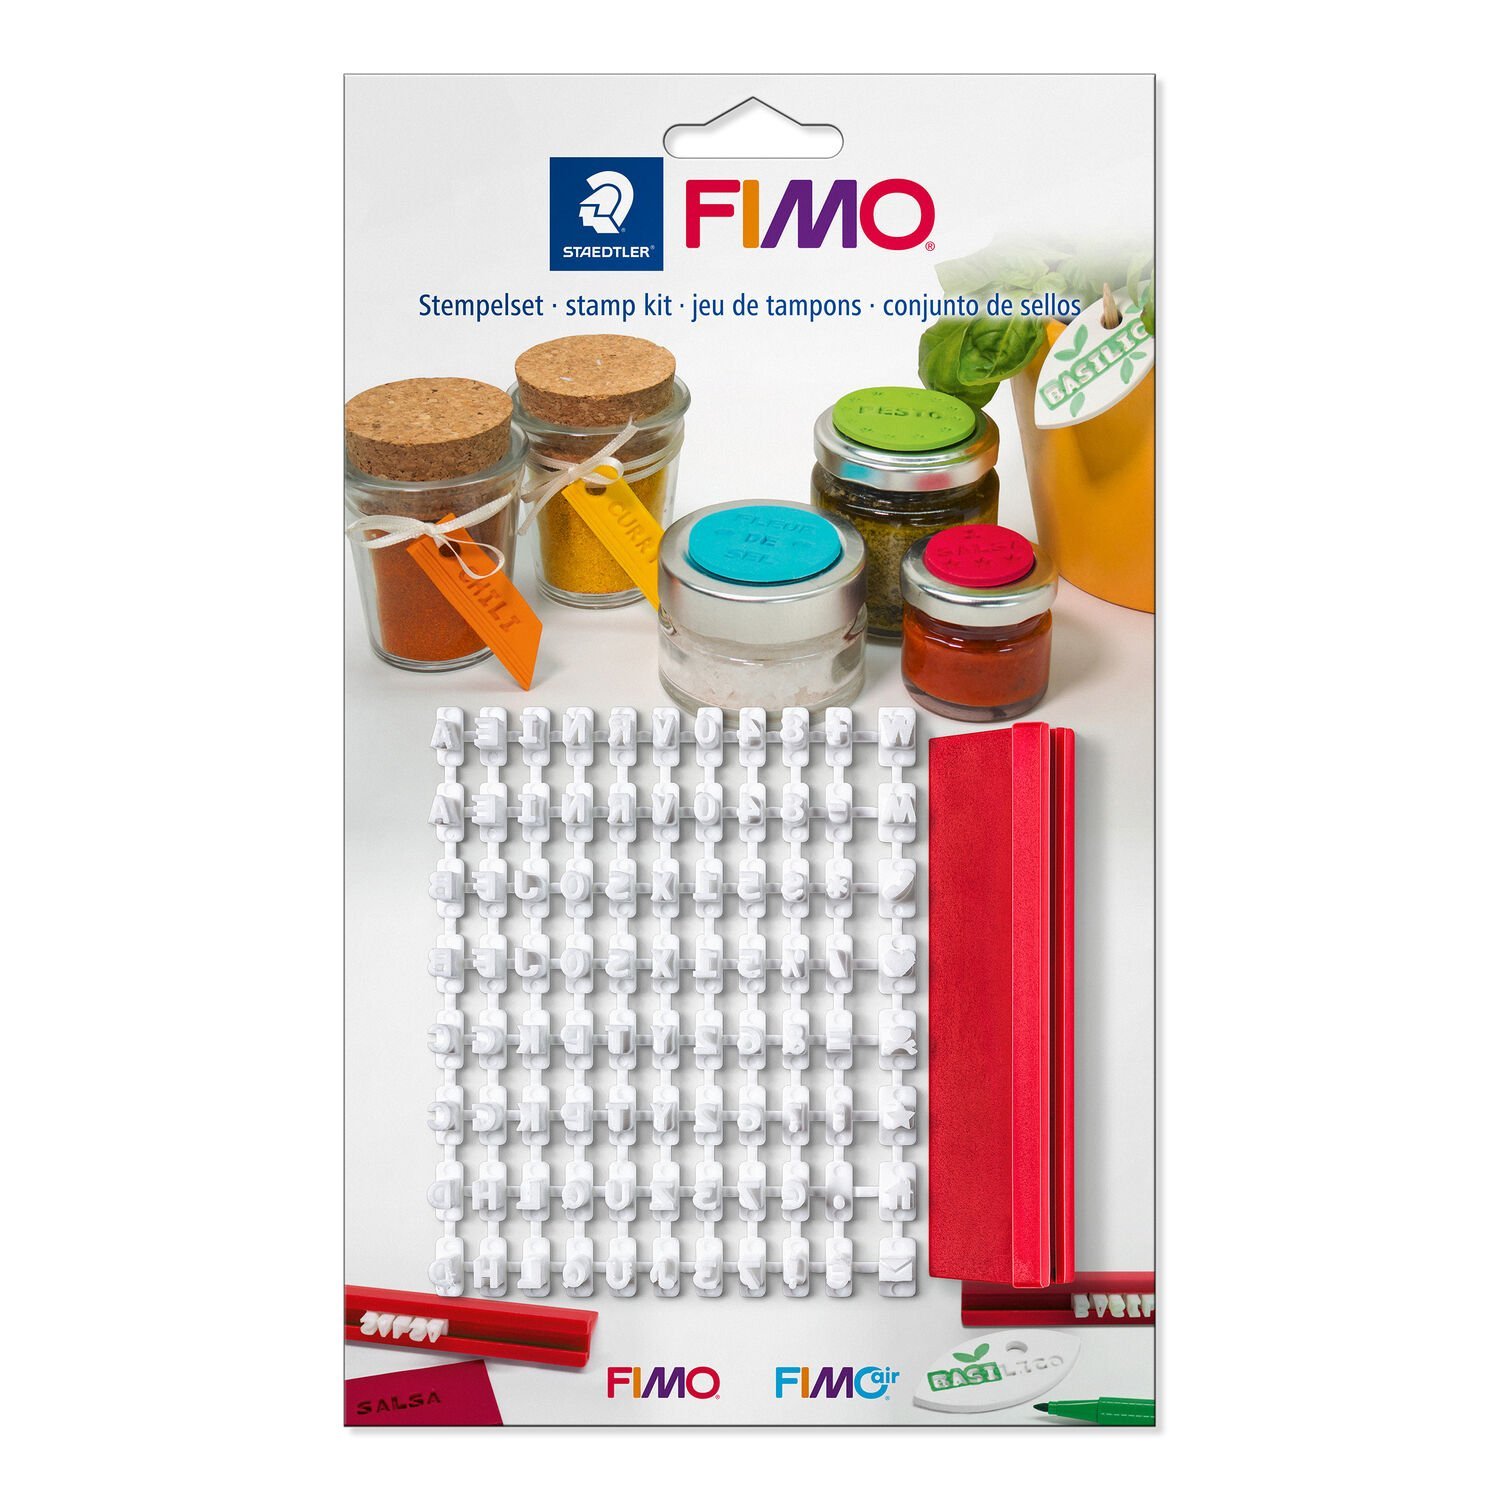 Stempelset FIMO® stamp kit 8700 09